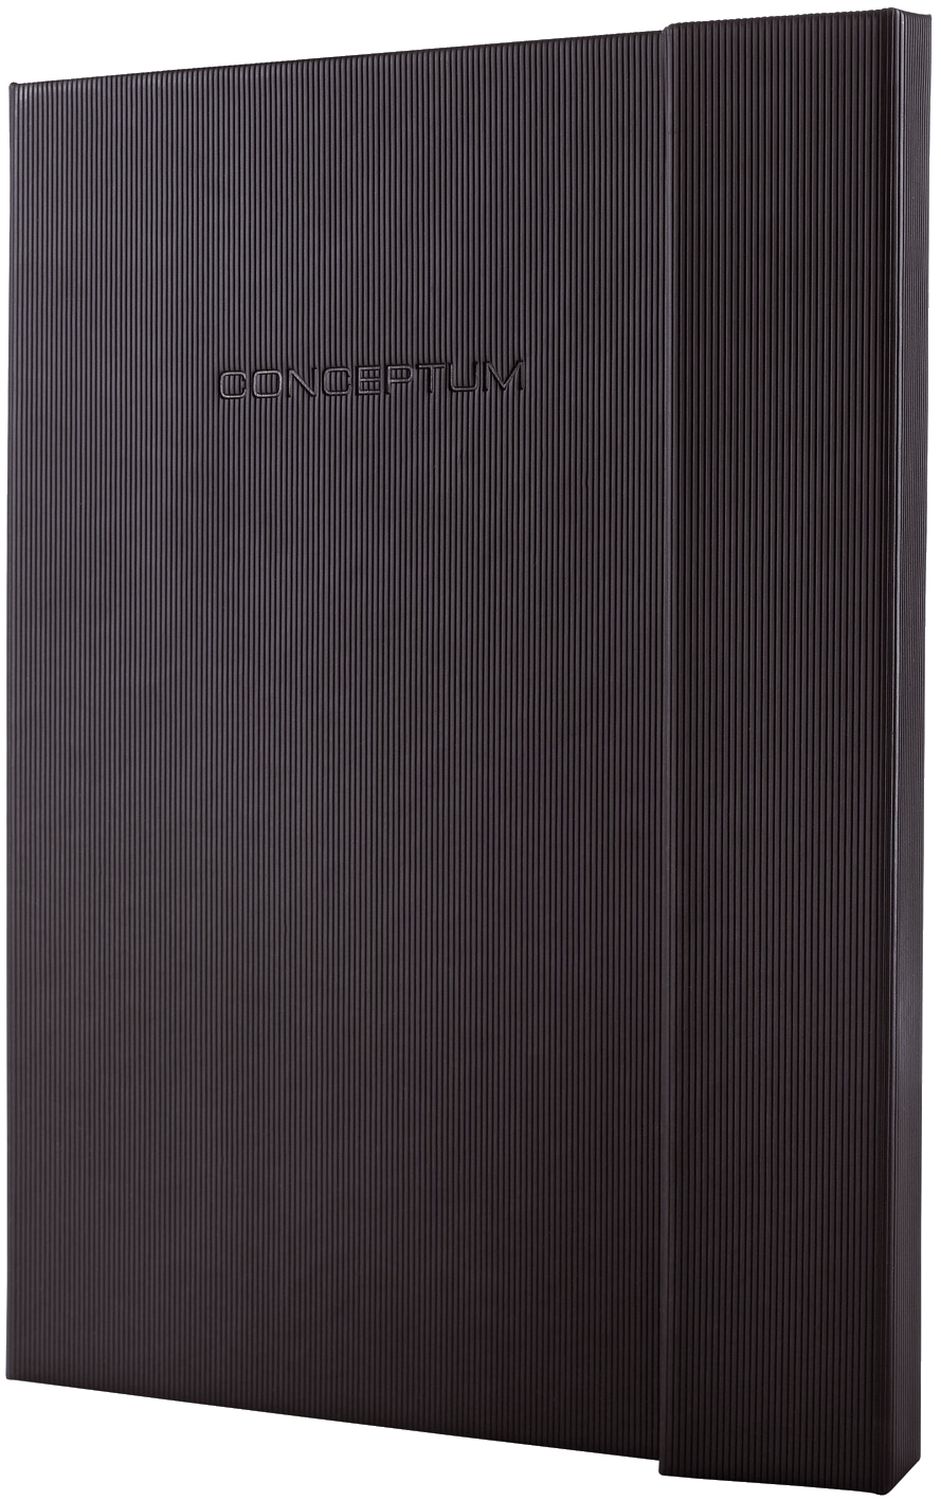 Notizbuch Conceptum - ca. A4, kariert, 194 Seiten, schwarz, Hardcover